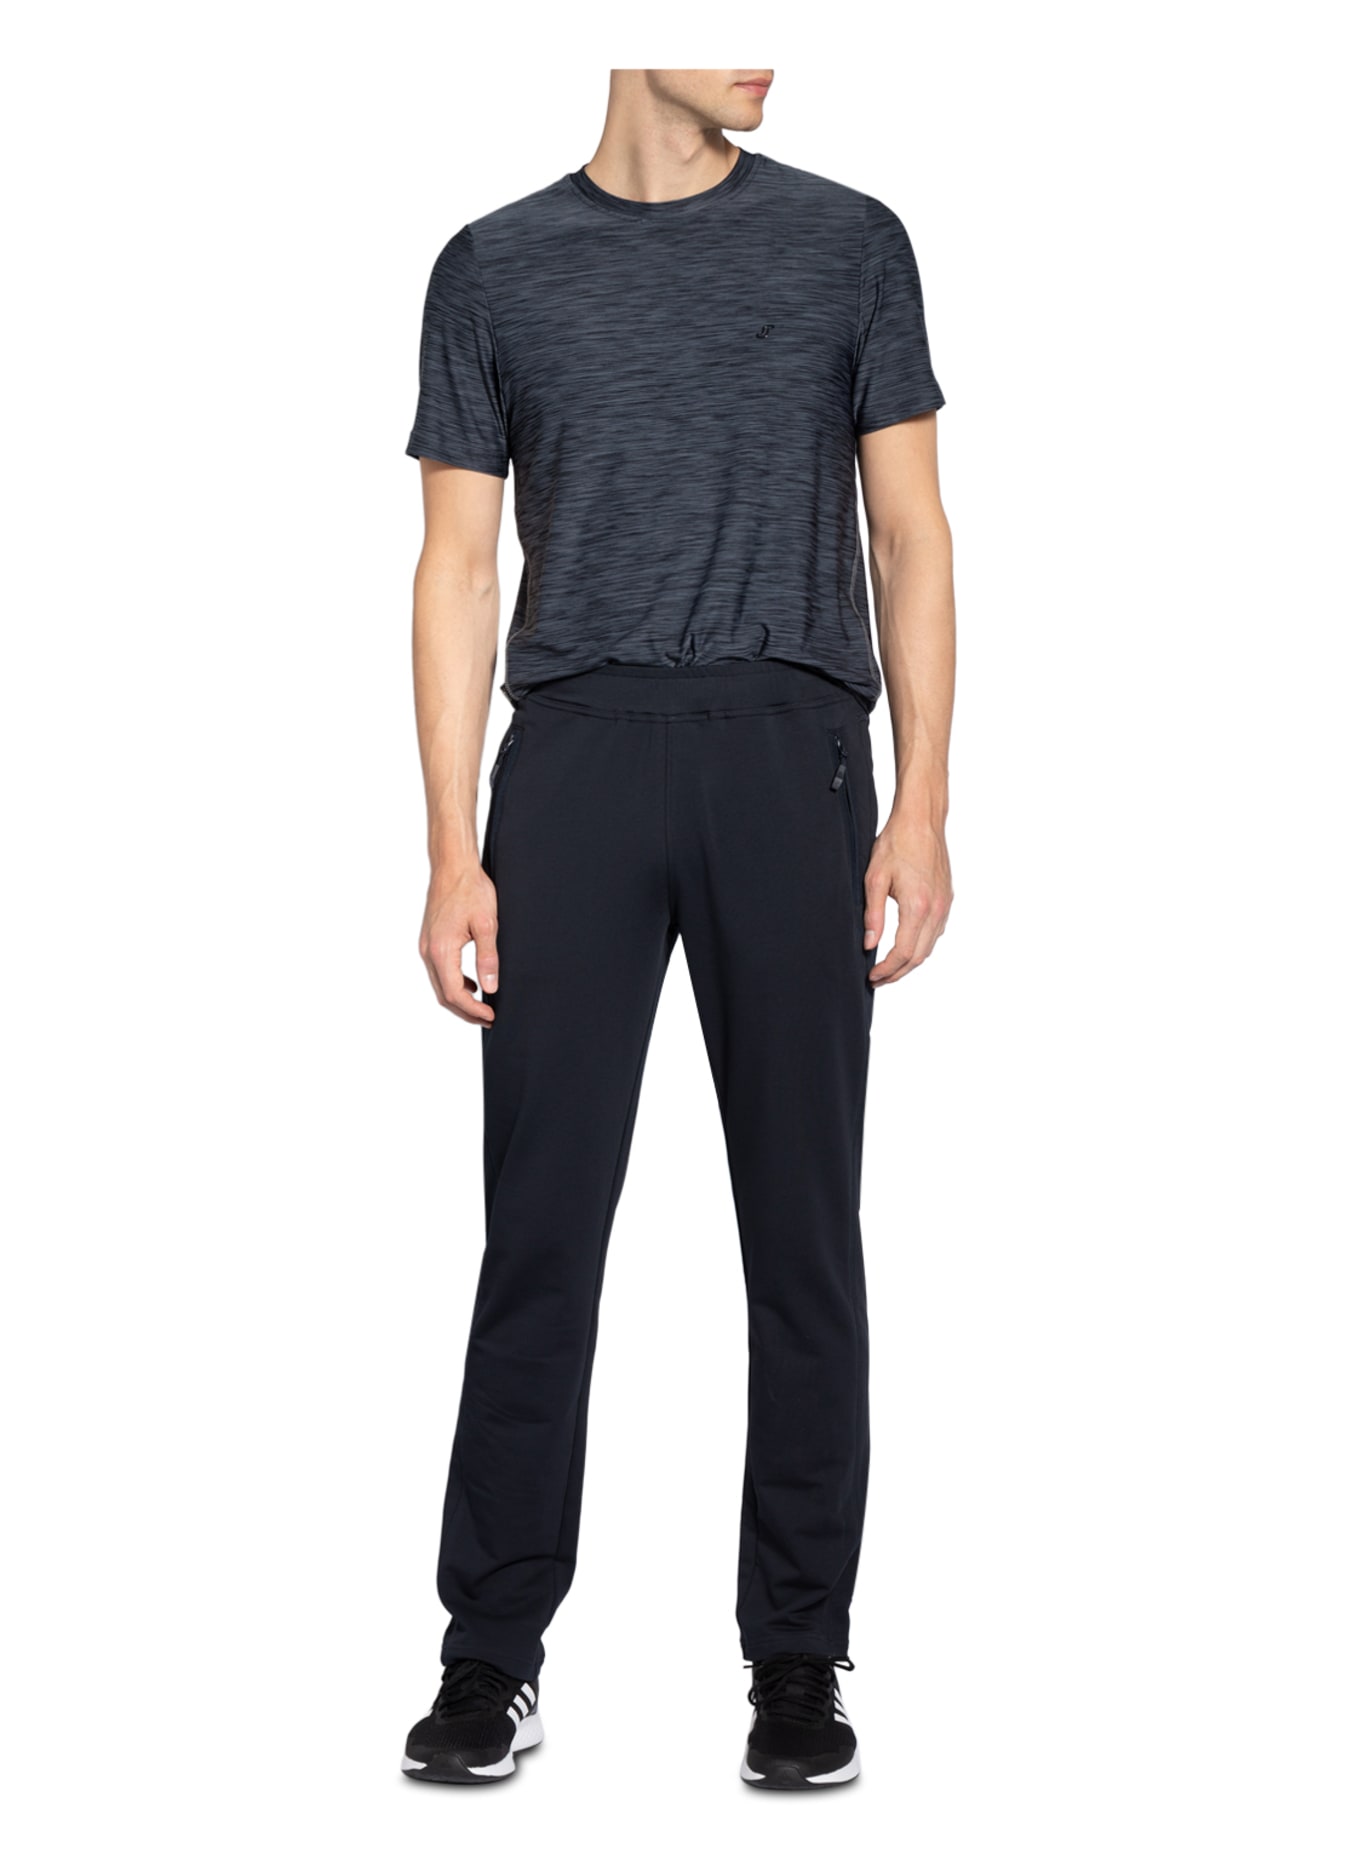 JOY sportswear Sweatpants FERNANDO, Farbe: DUNKELBLAU (Bild 2)